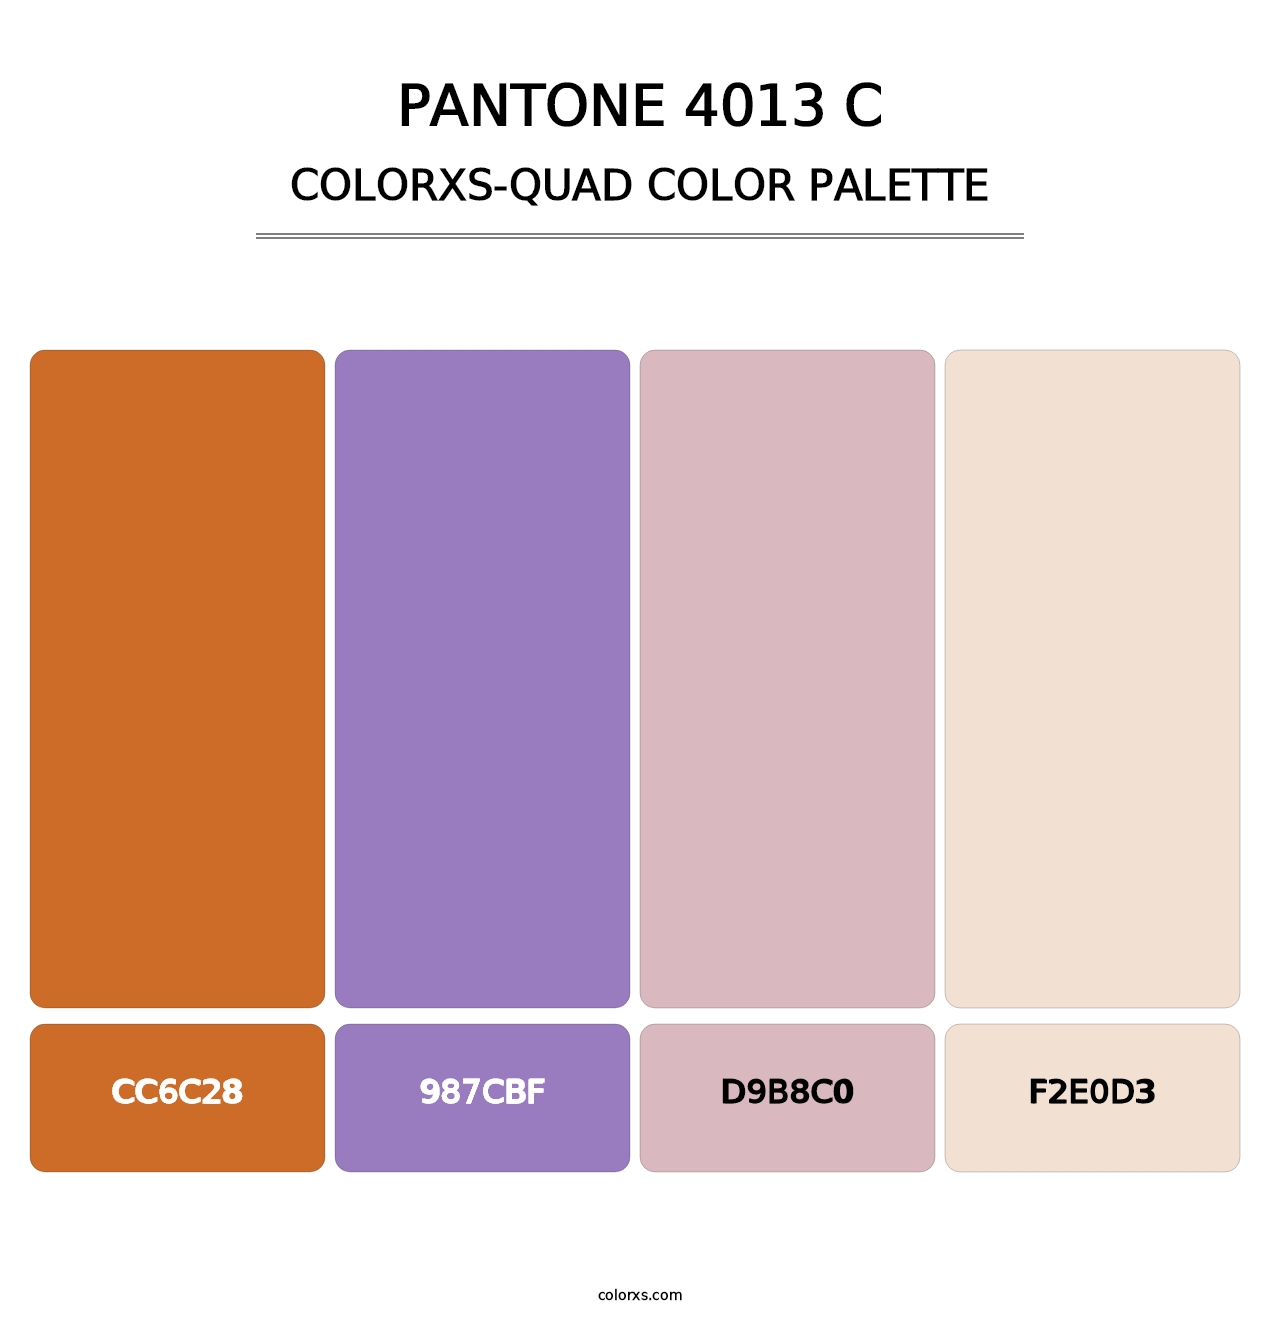 PANTONE 4013 C - Colorxs Quad Palette